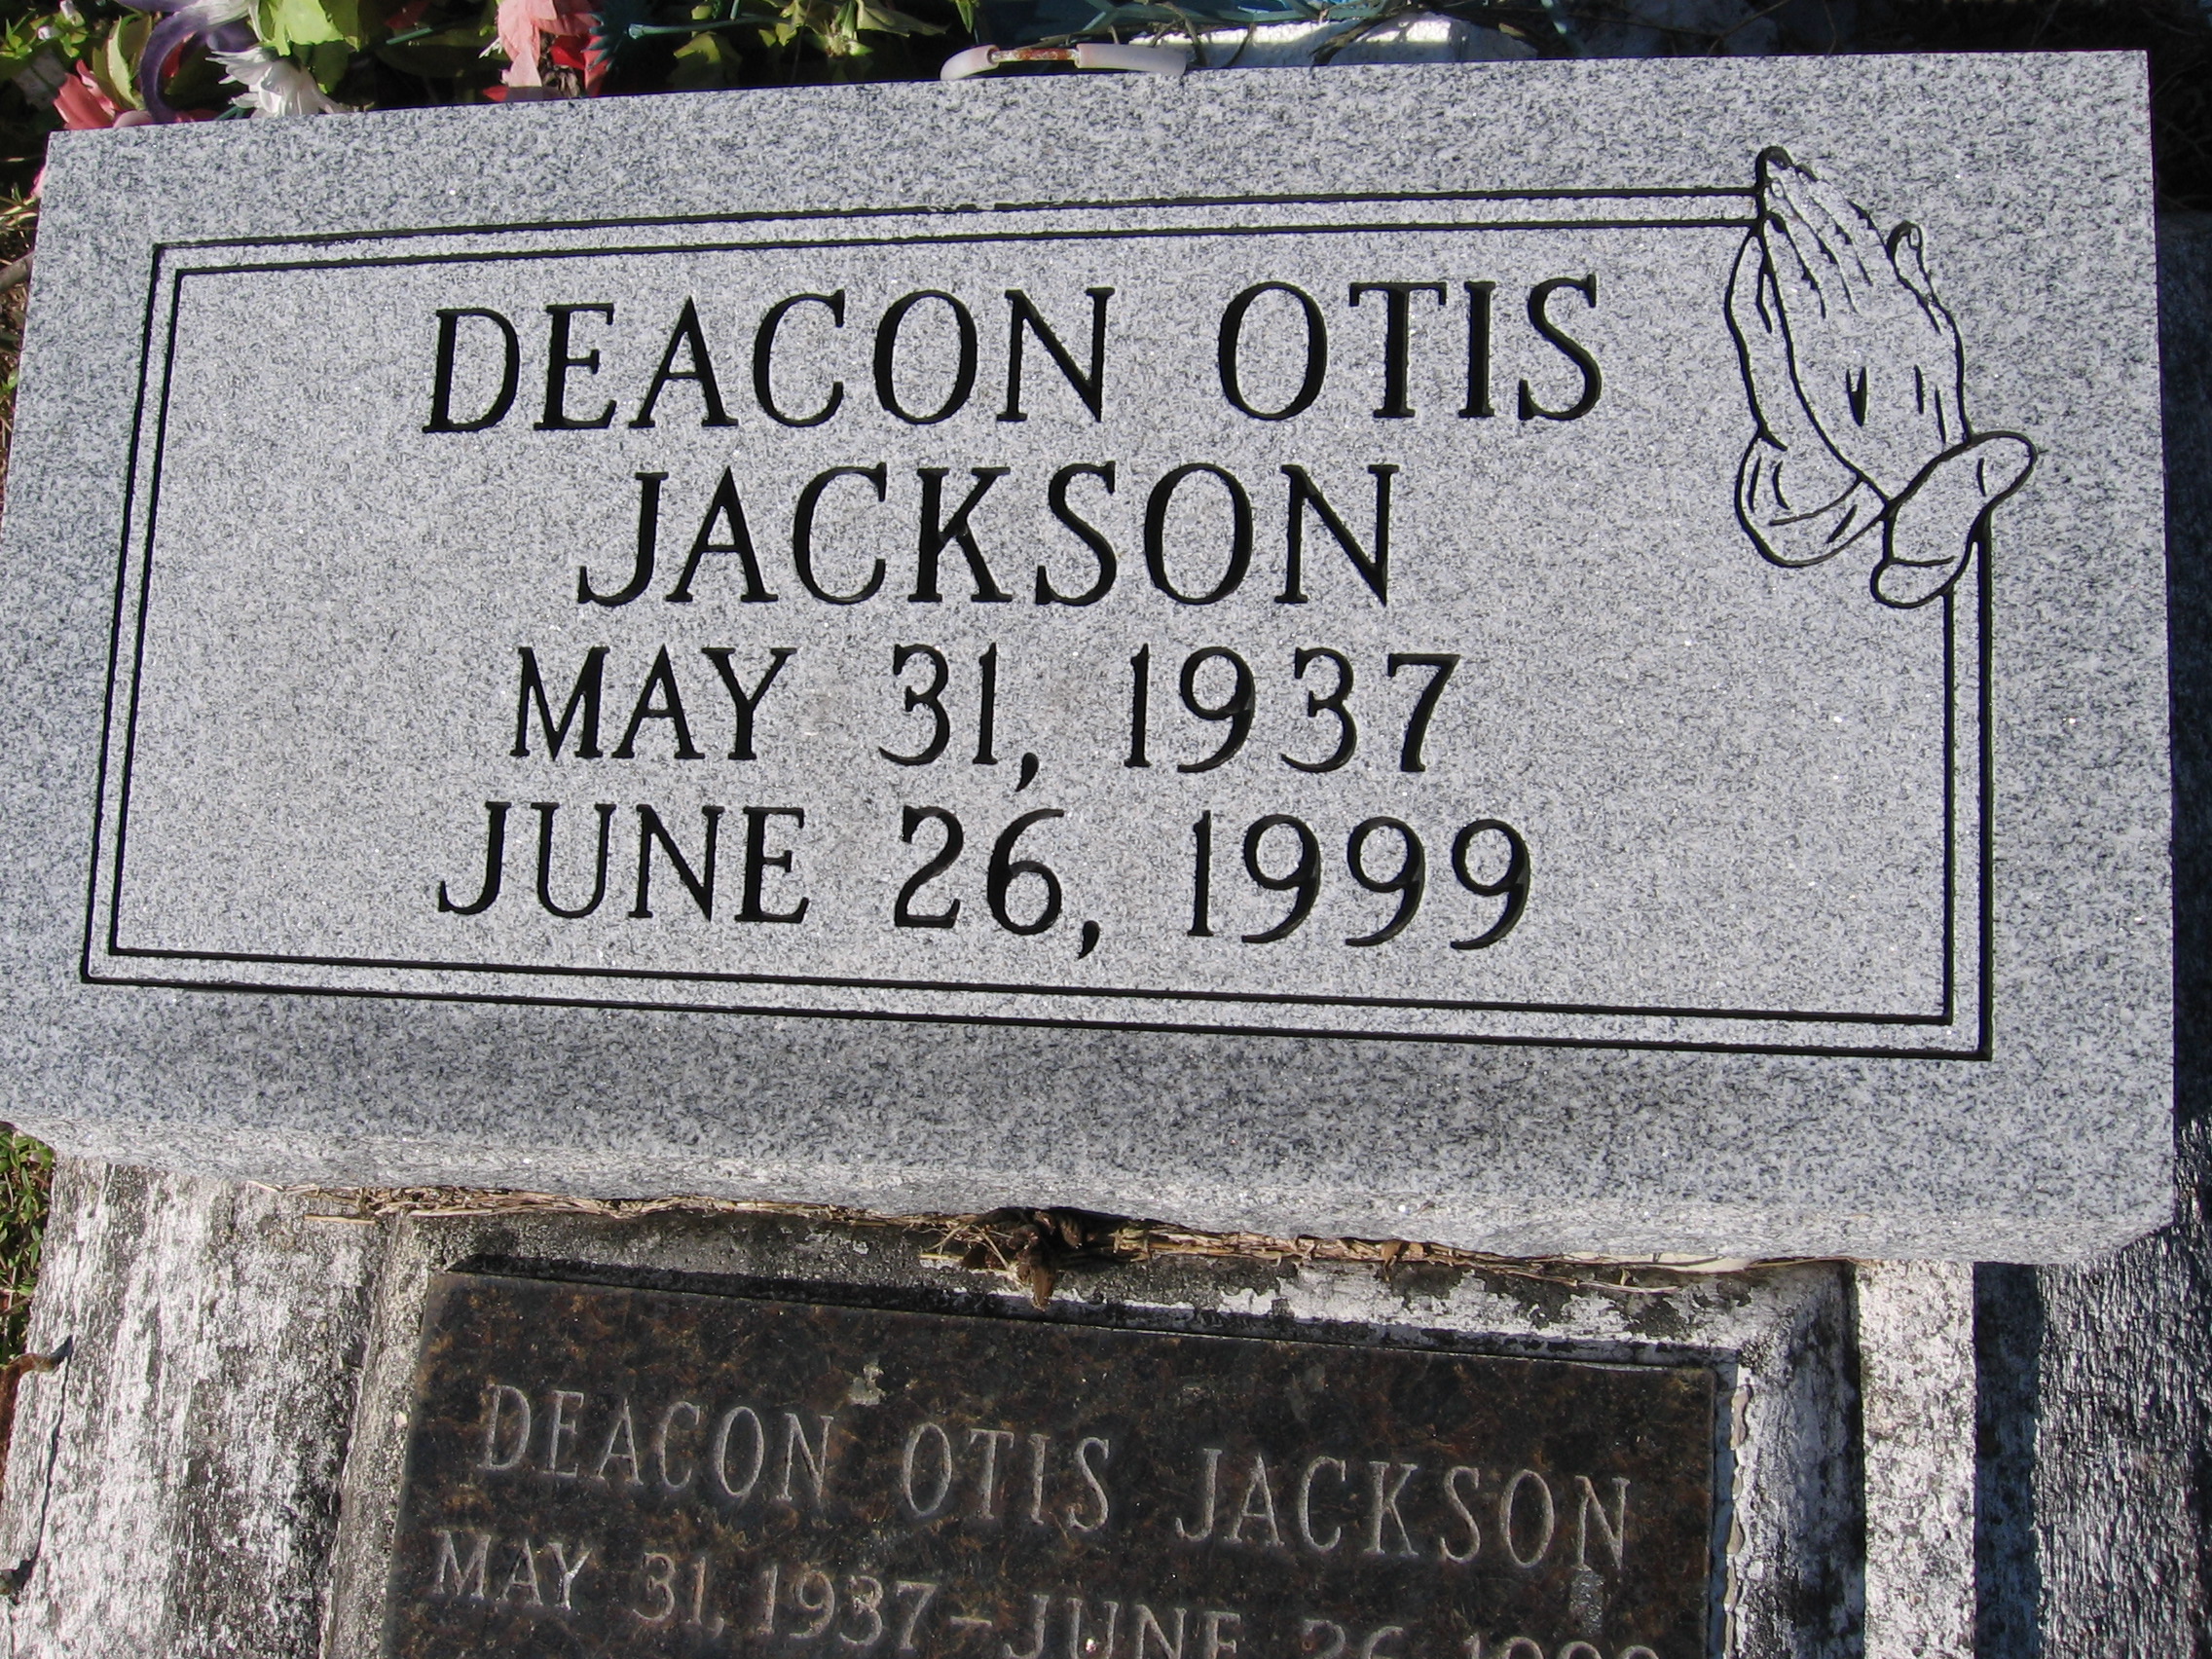 Deacon Otis Jackson